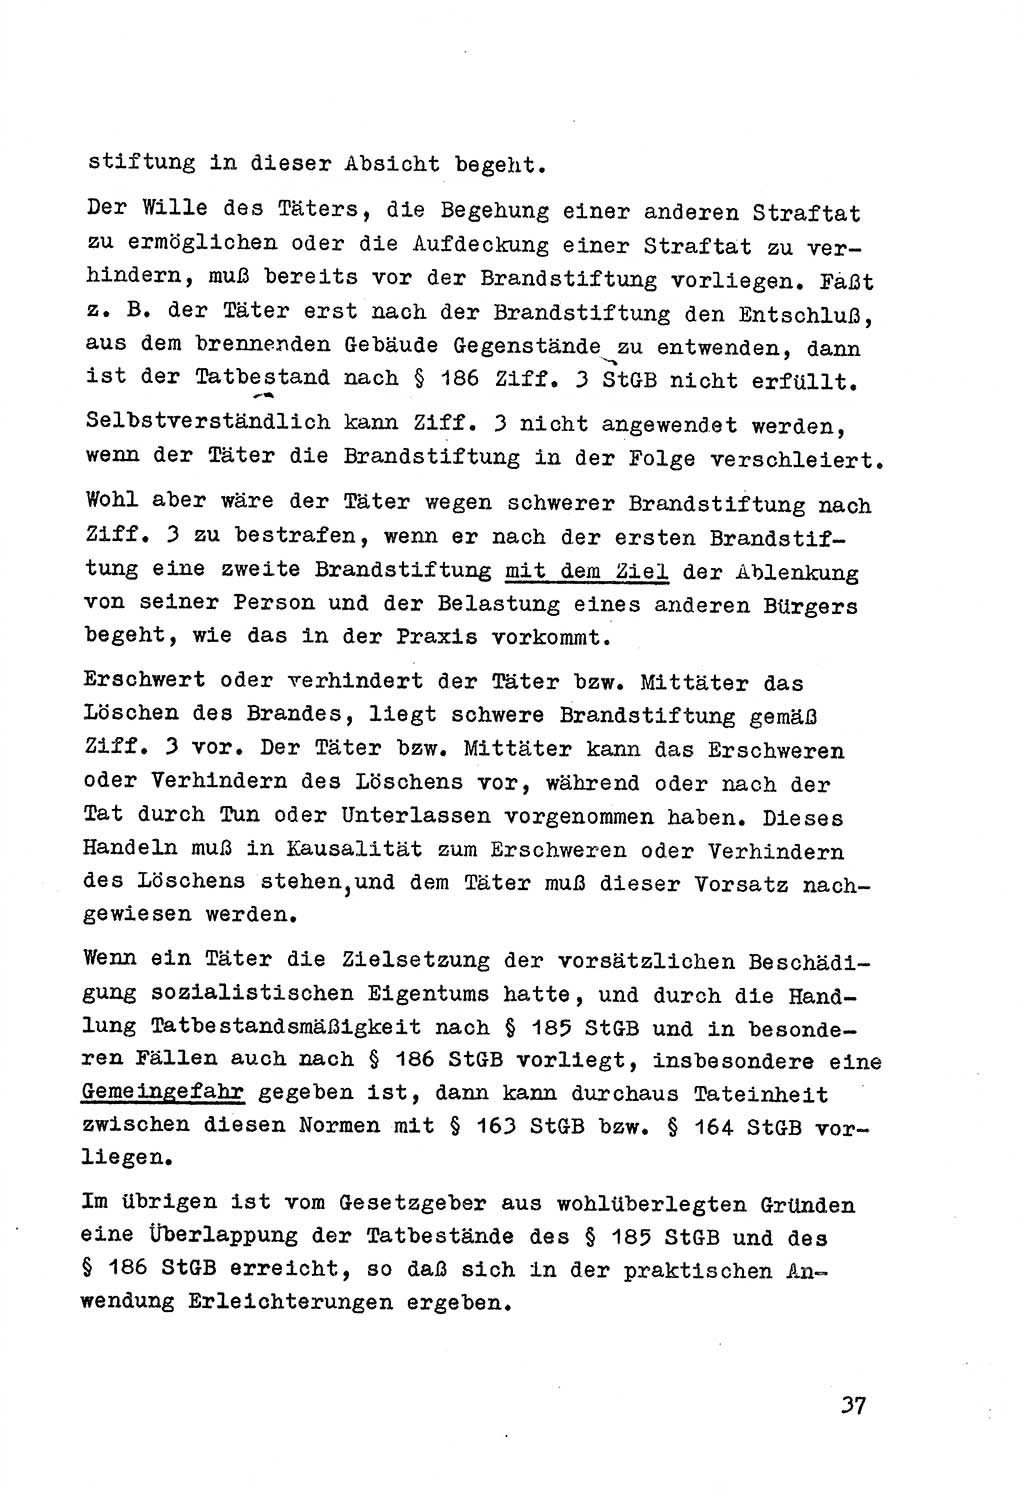 Strafrecht der DDR (Deutsche Demokratische Republik), Besonderer Teil, Lehrmaterial, Heft 7 1970, Seite 37 (Strafr. DDR BT Lehrmat. H. 7 1970, S. 37)